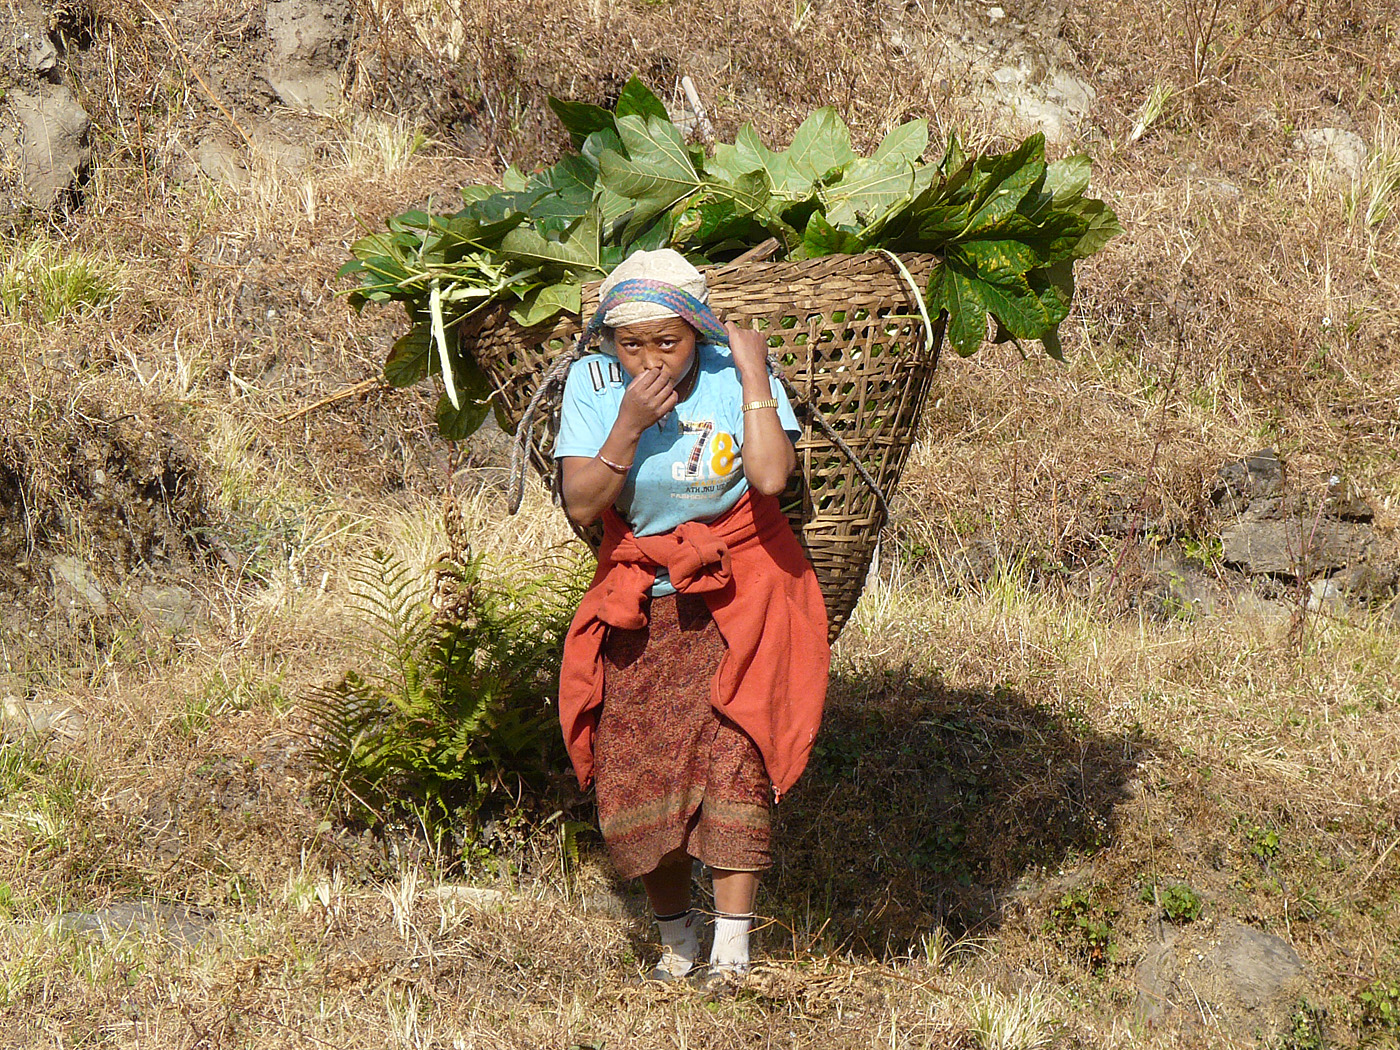 Farm worker, Ghandruk